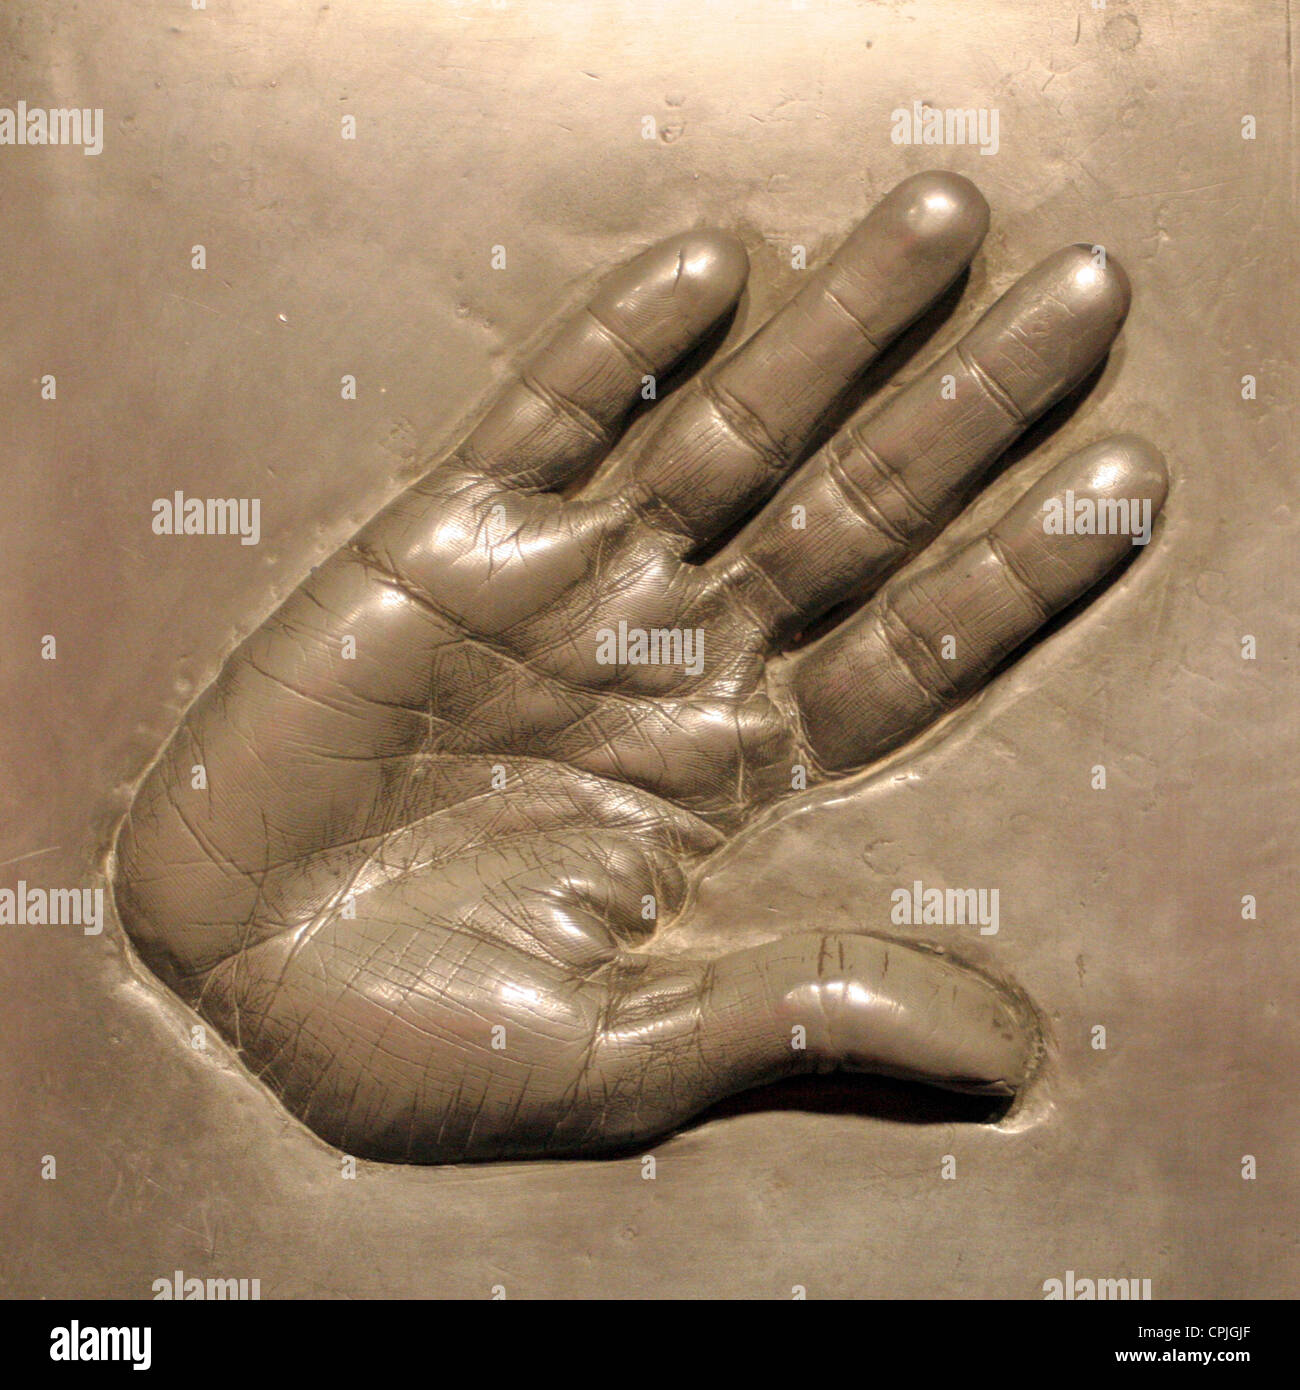 Une empreinte d'une main en métal dans les oeuvres de cire Madame Tussauds, Berlin, Allemagne Banque D'Images